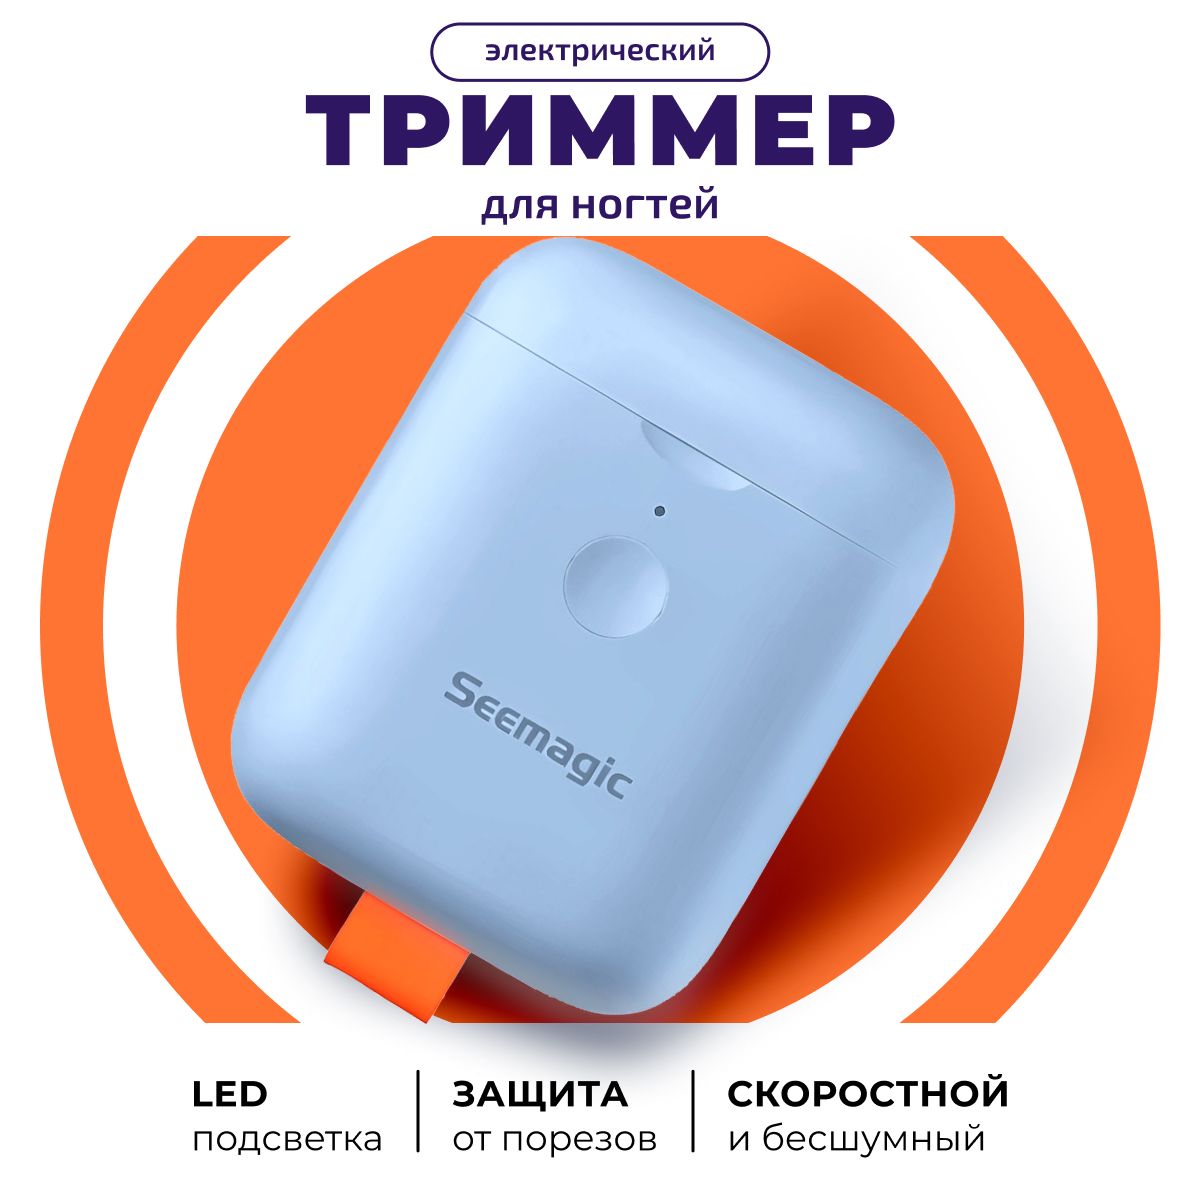 Электрический триммер для ногтей Seemagic mini – купить в Москве, цены в интернет-магазинах на Мегамаркет